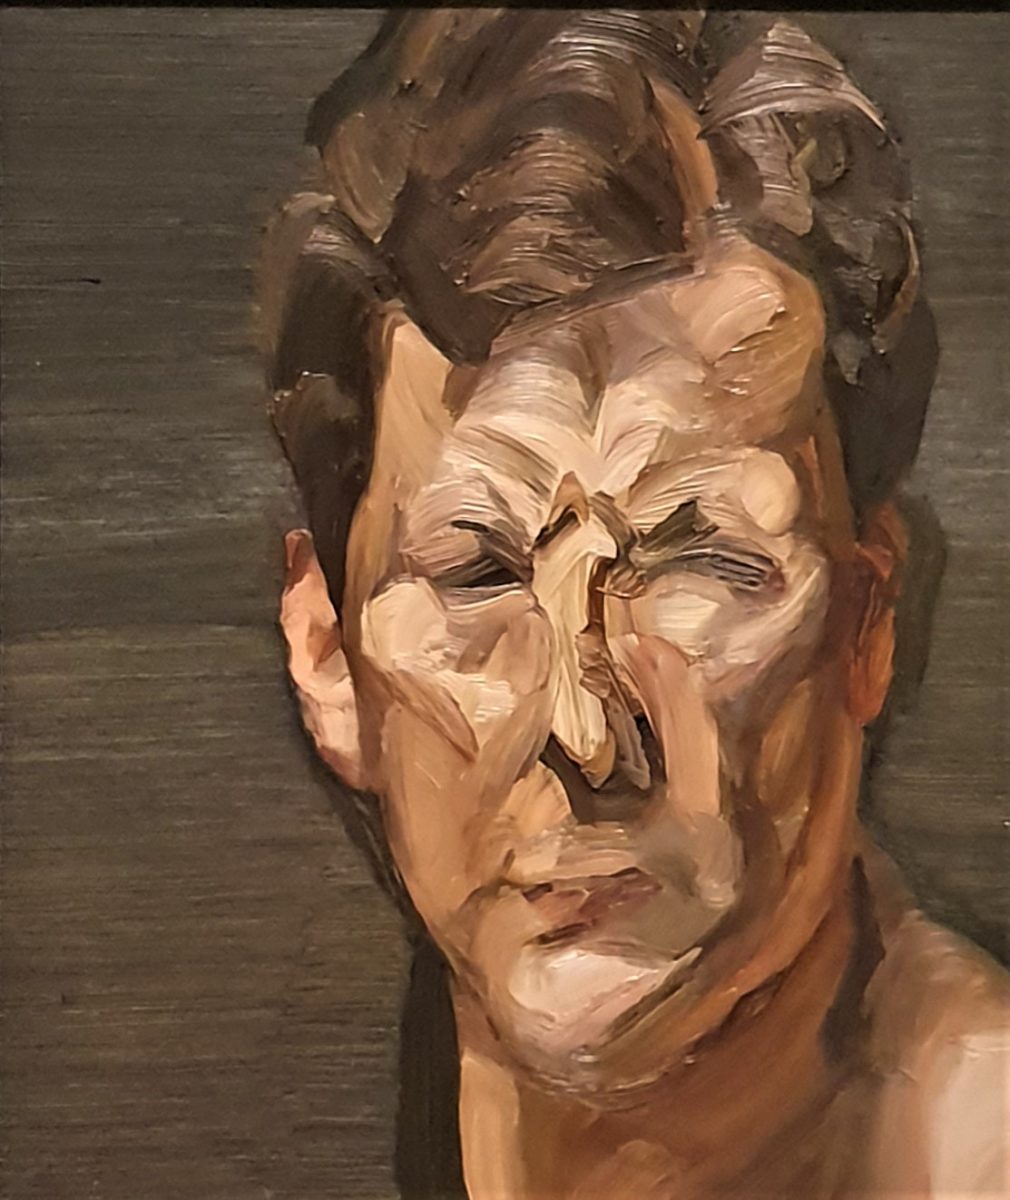 英國藝術大師lucian Freud 用自畫像記錄外人難以窺見的私密人生 透視英國面面觀